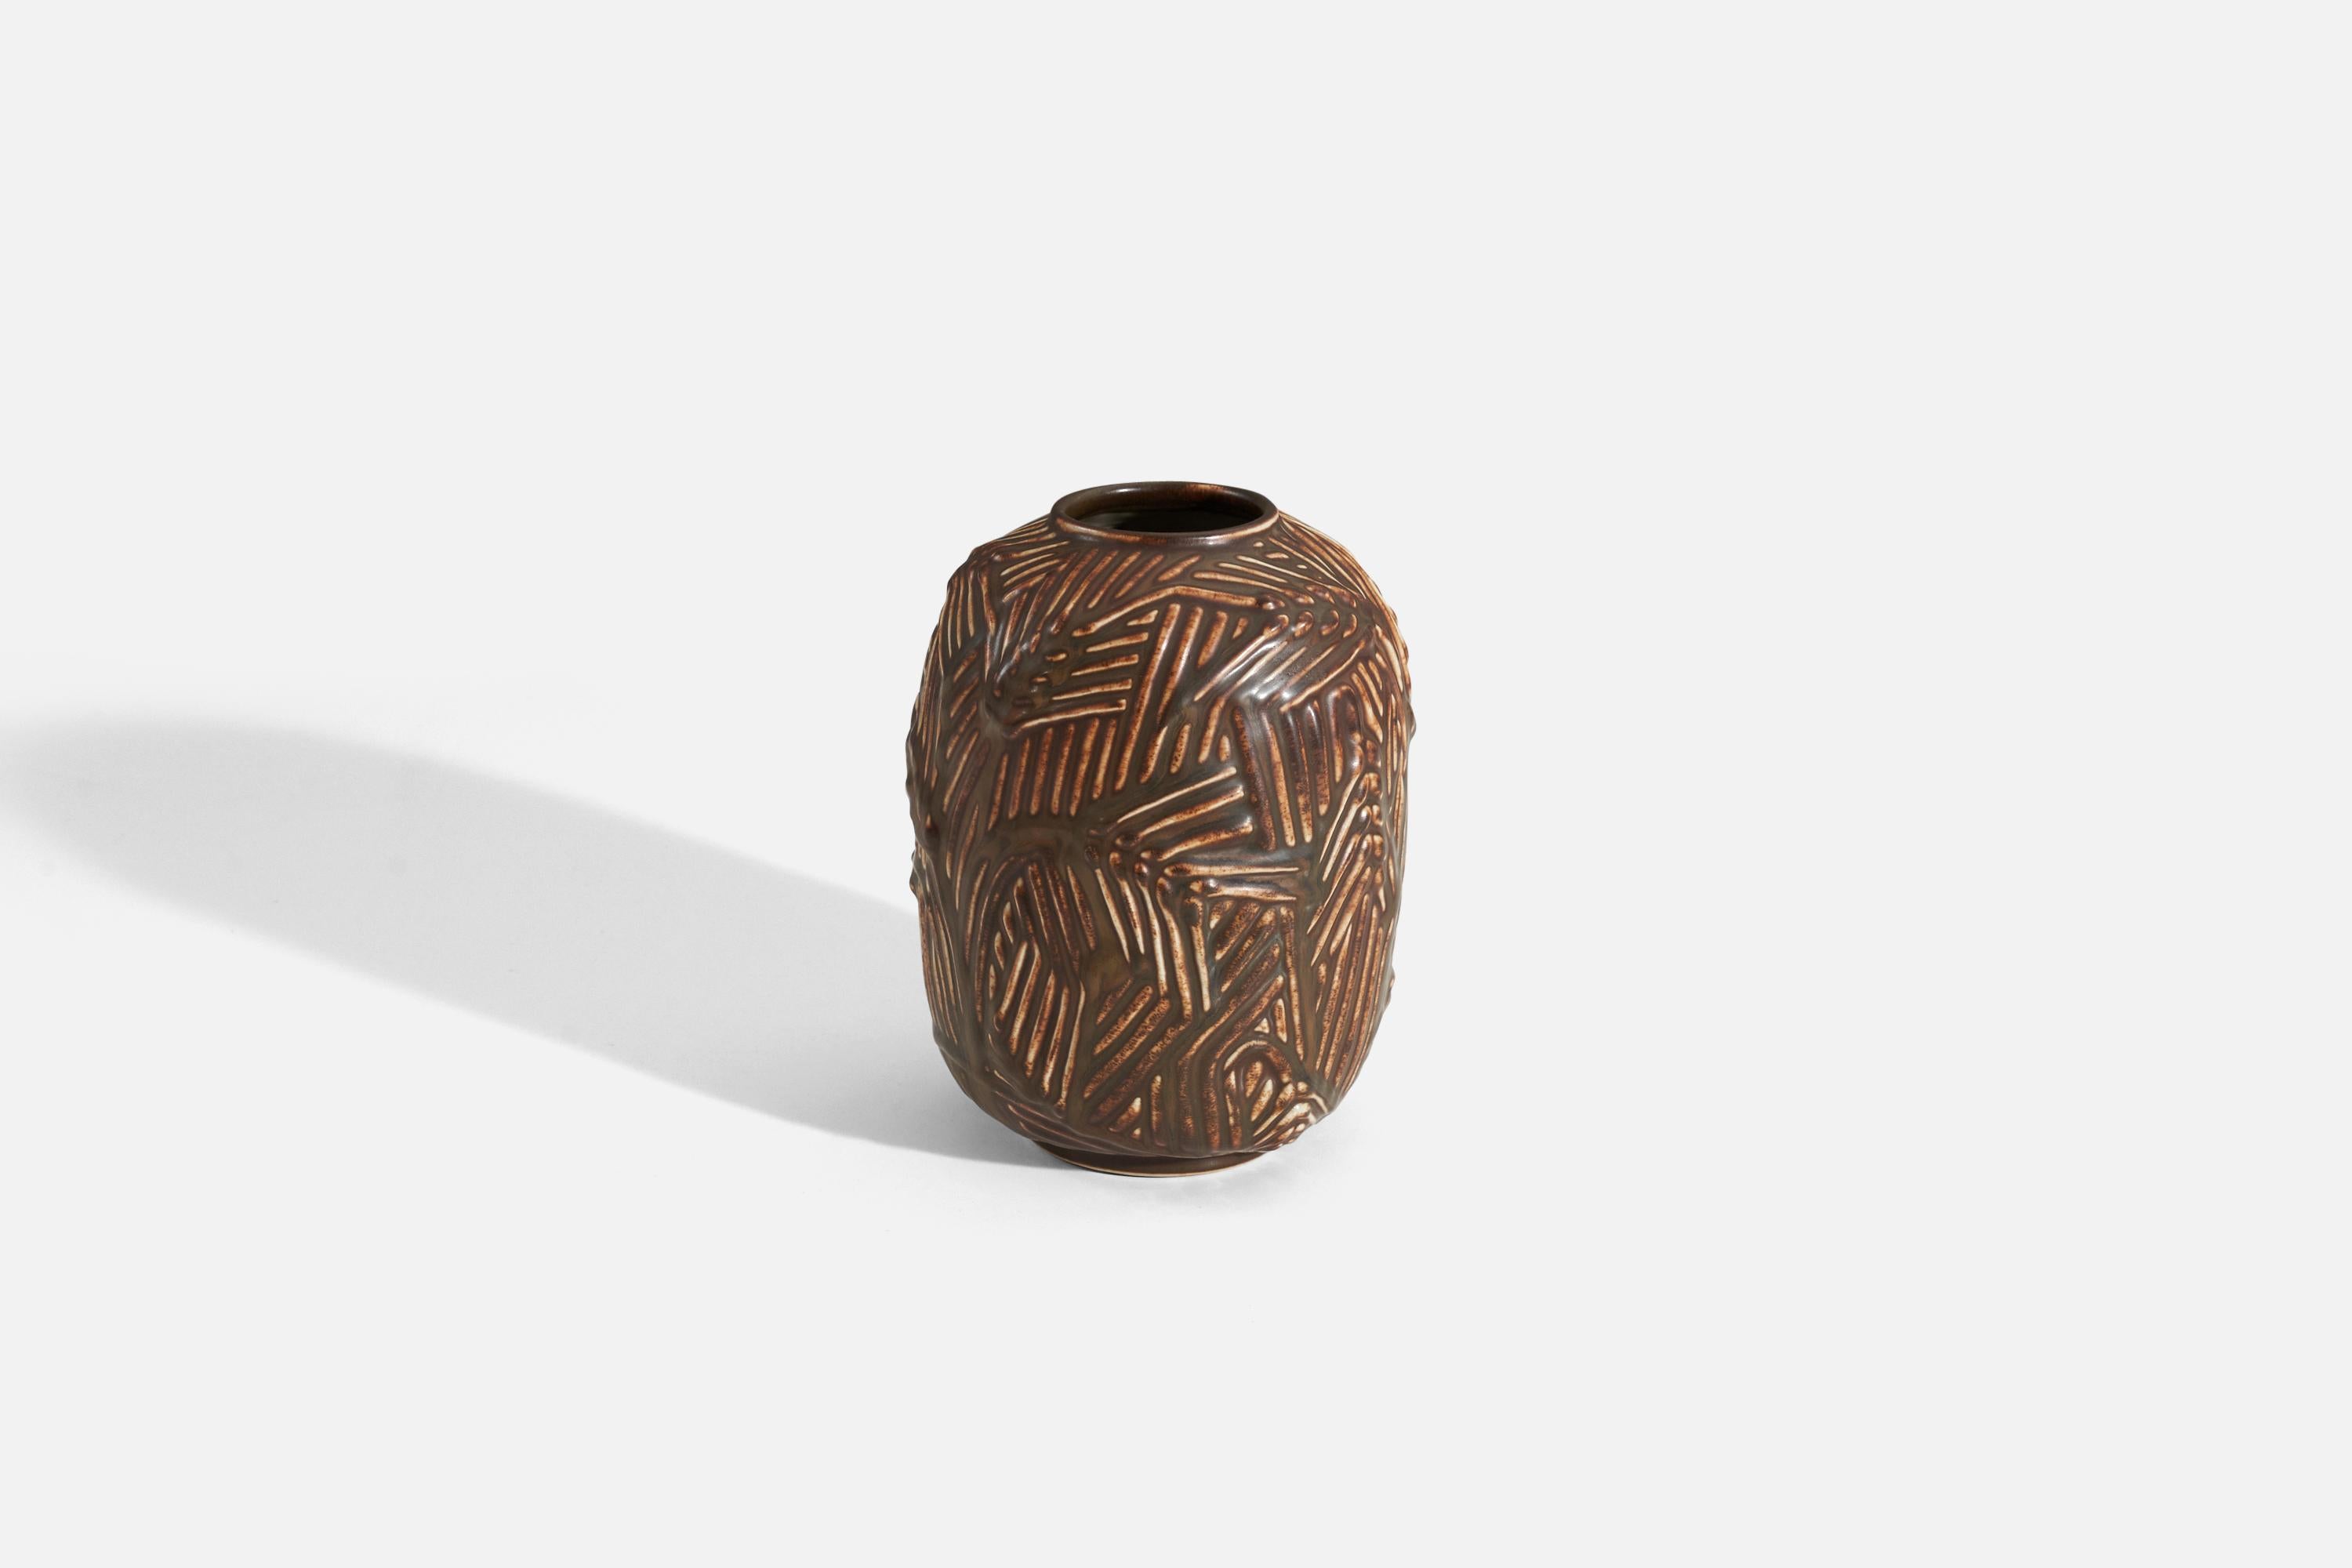 Un vase en grès, produit par Bing & Grøndahl, Danemark, vers les années 1940. Conception attribuée à Axel Salto.